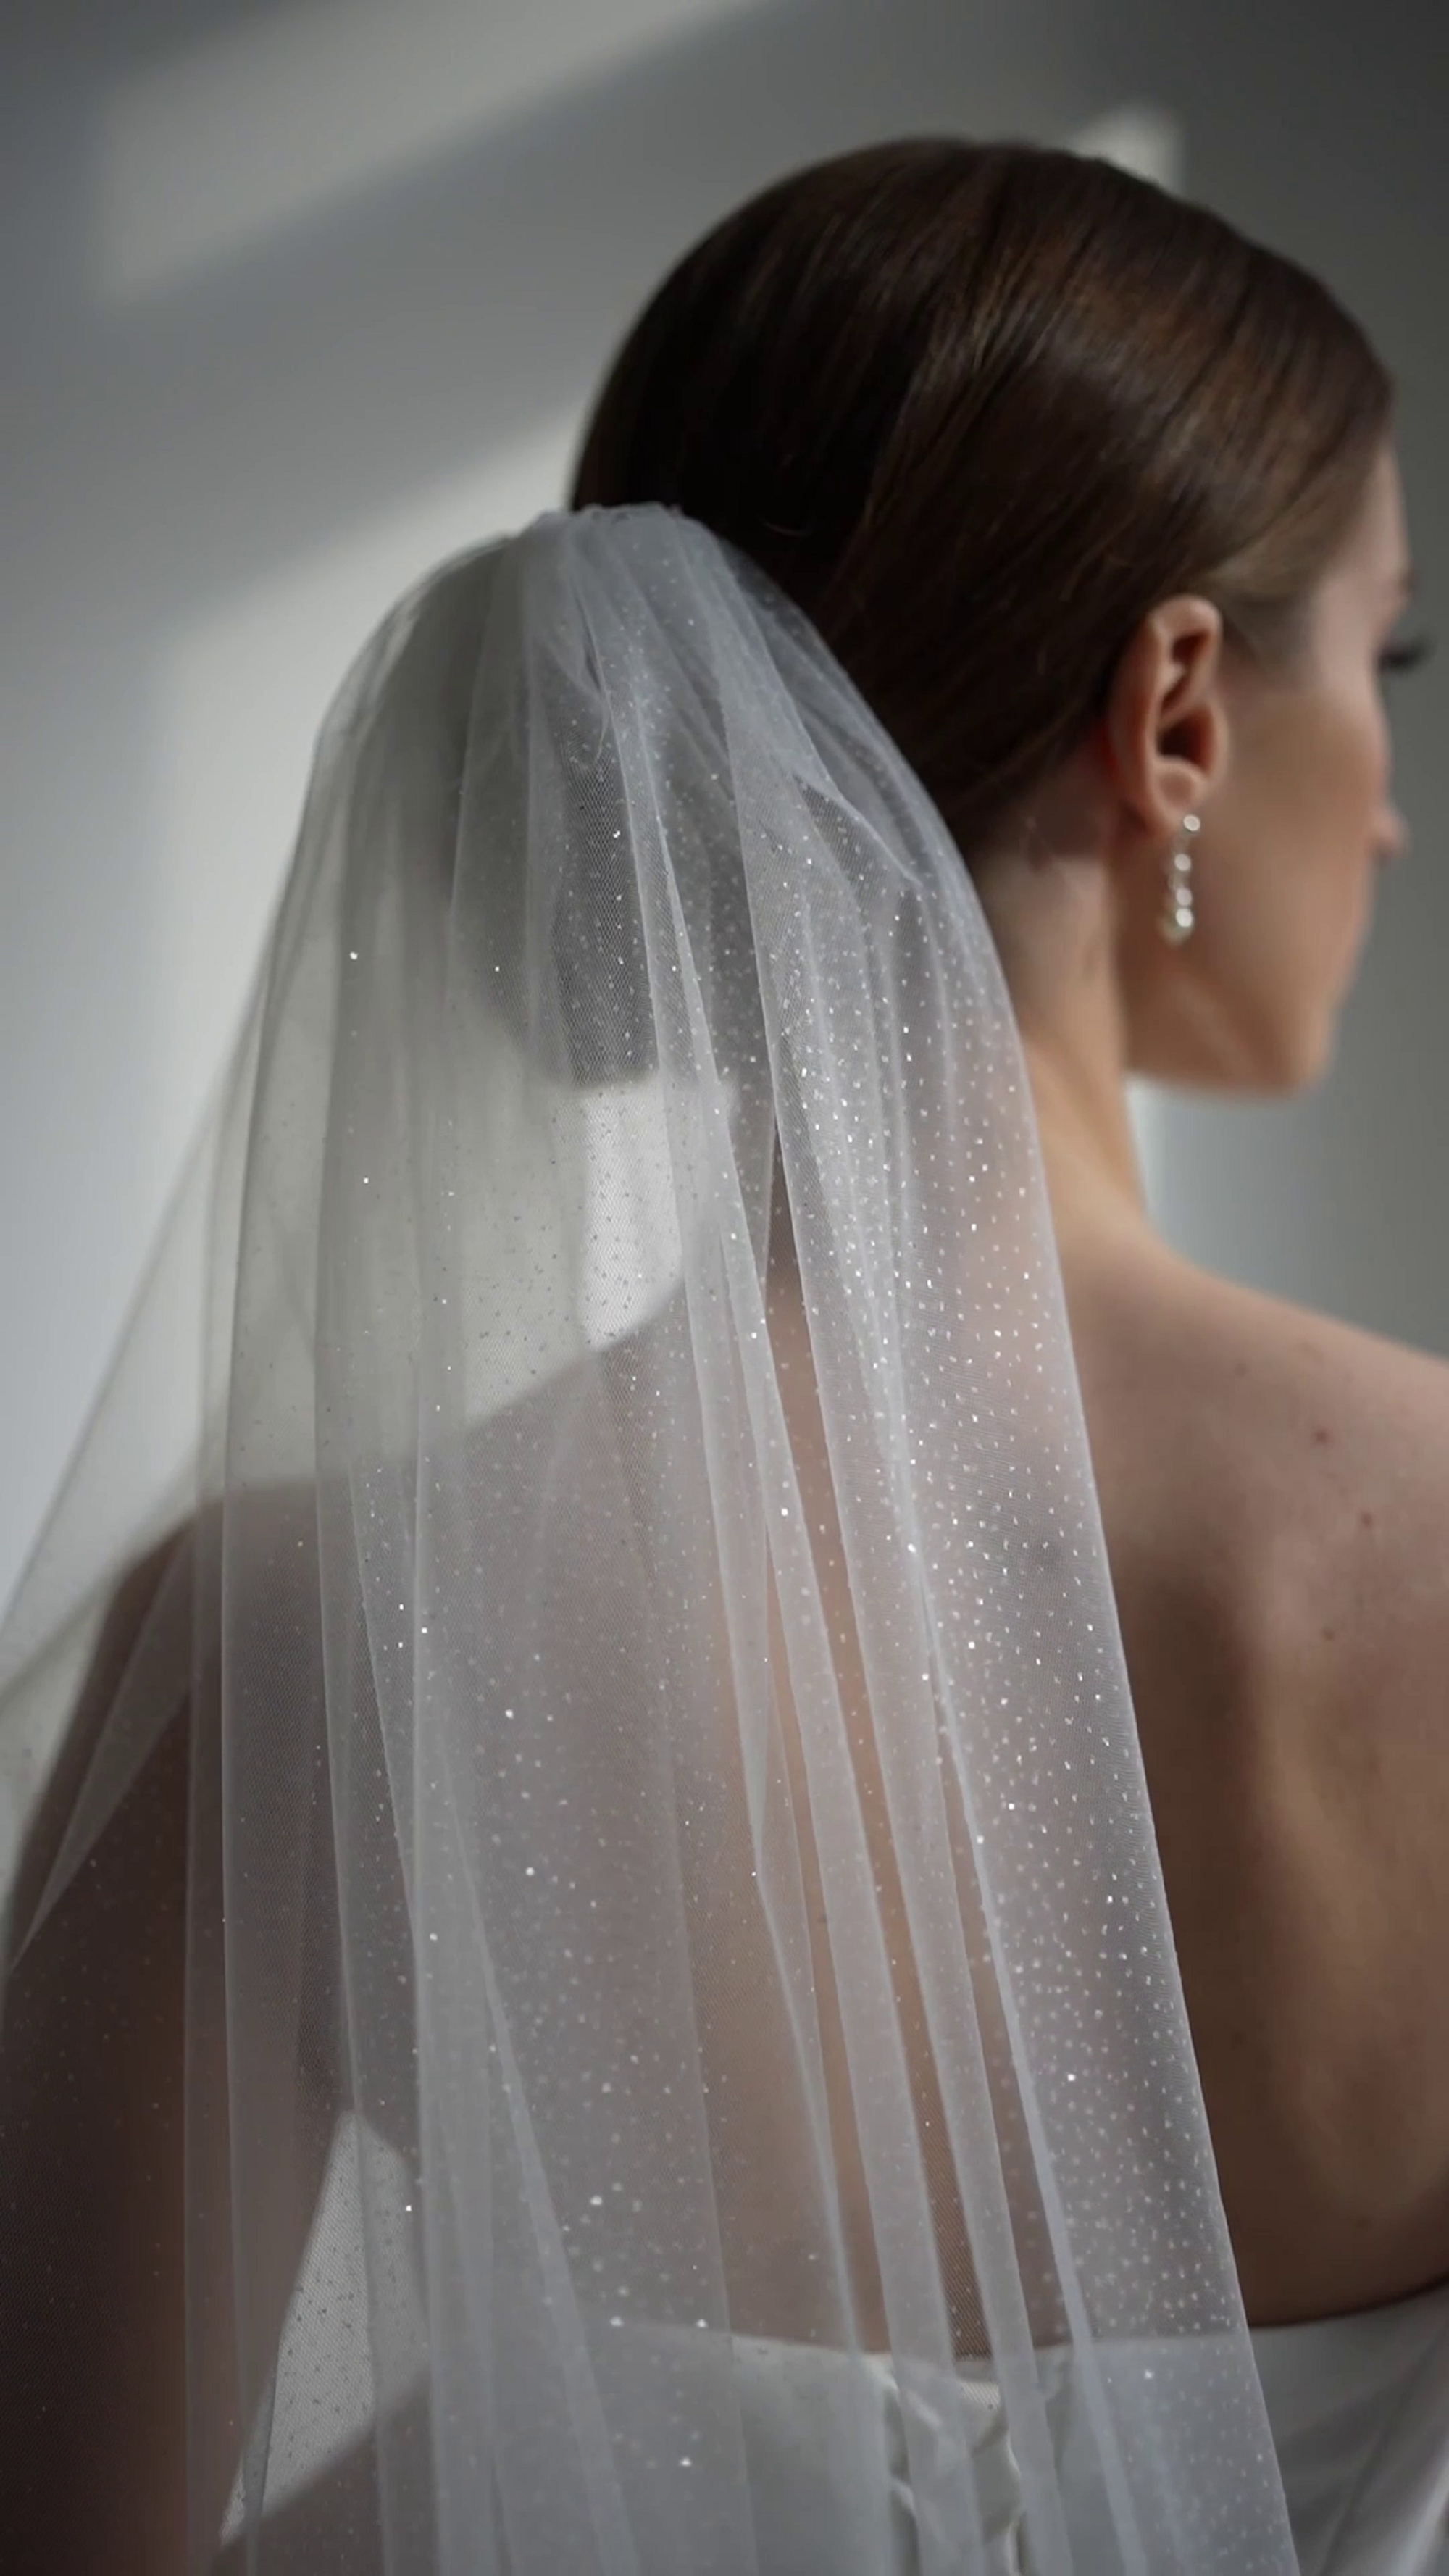  Unsutuo 1 Tier Glitter Bride Wedding Veil Elbow